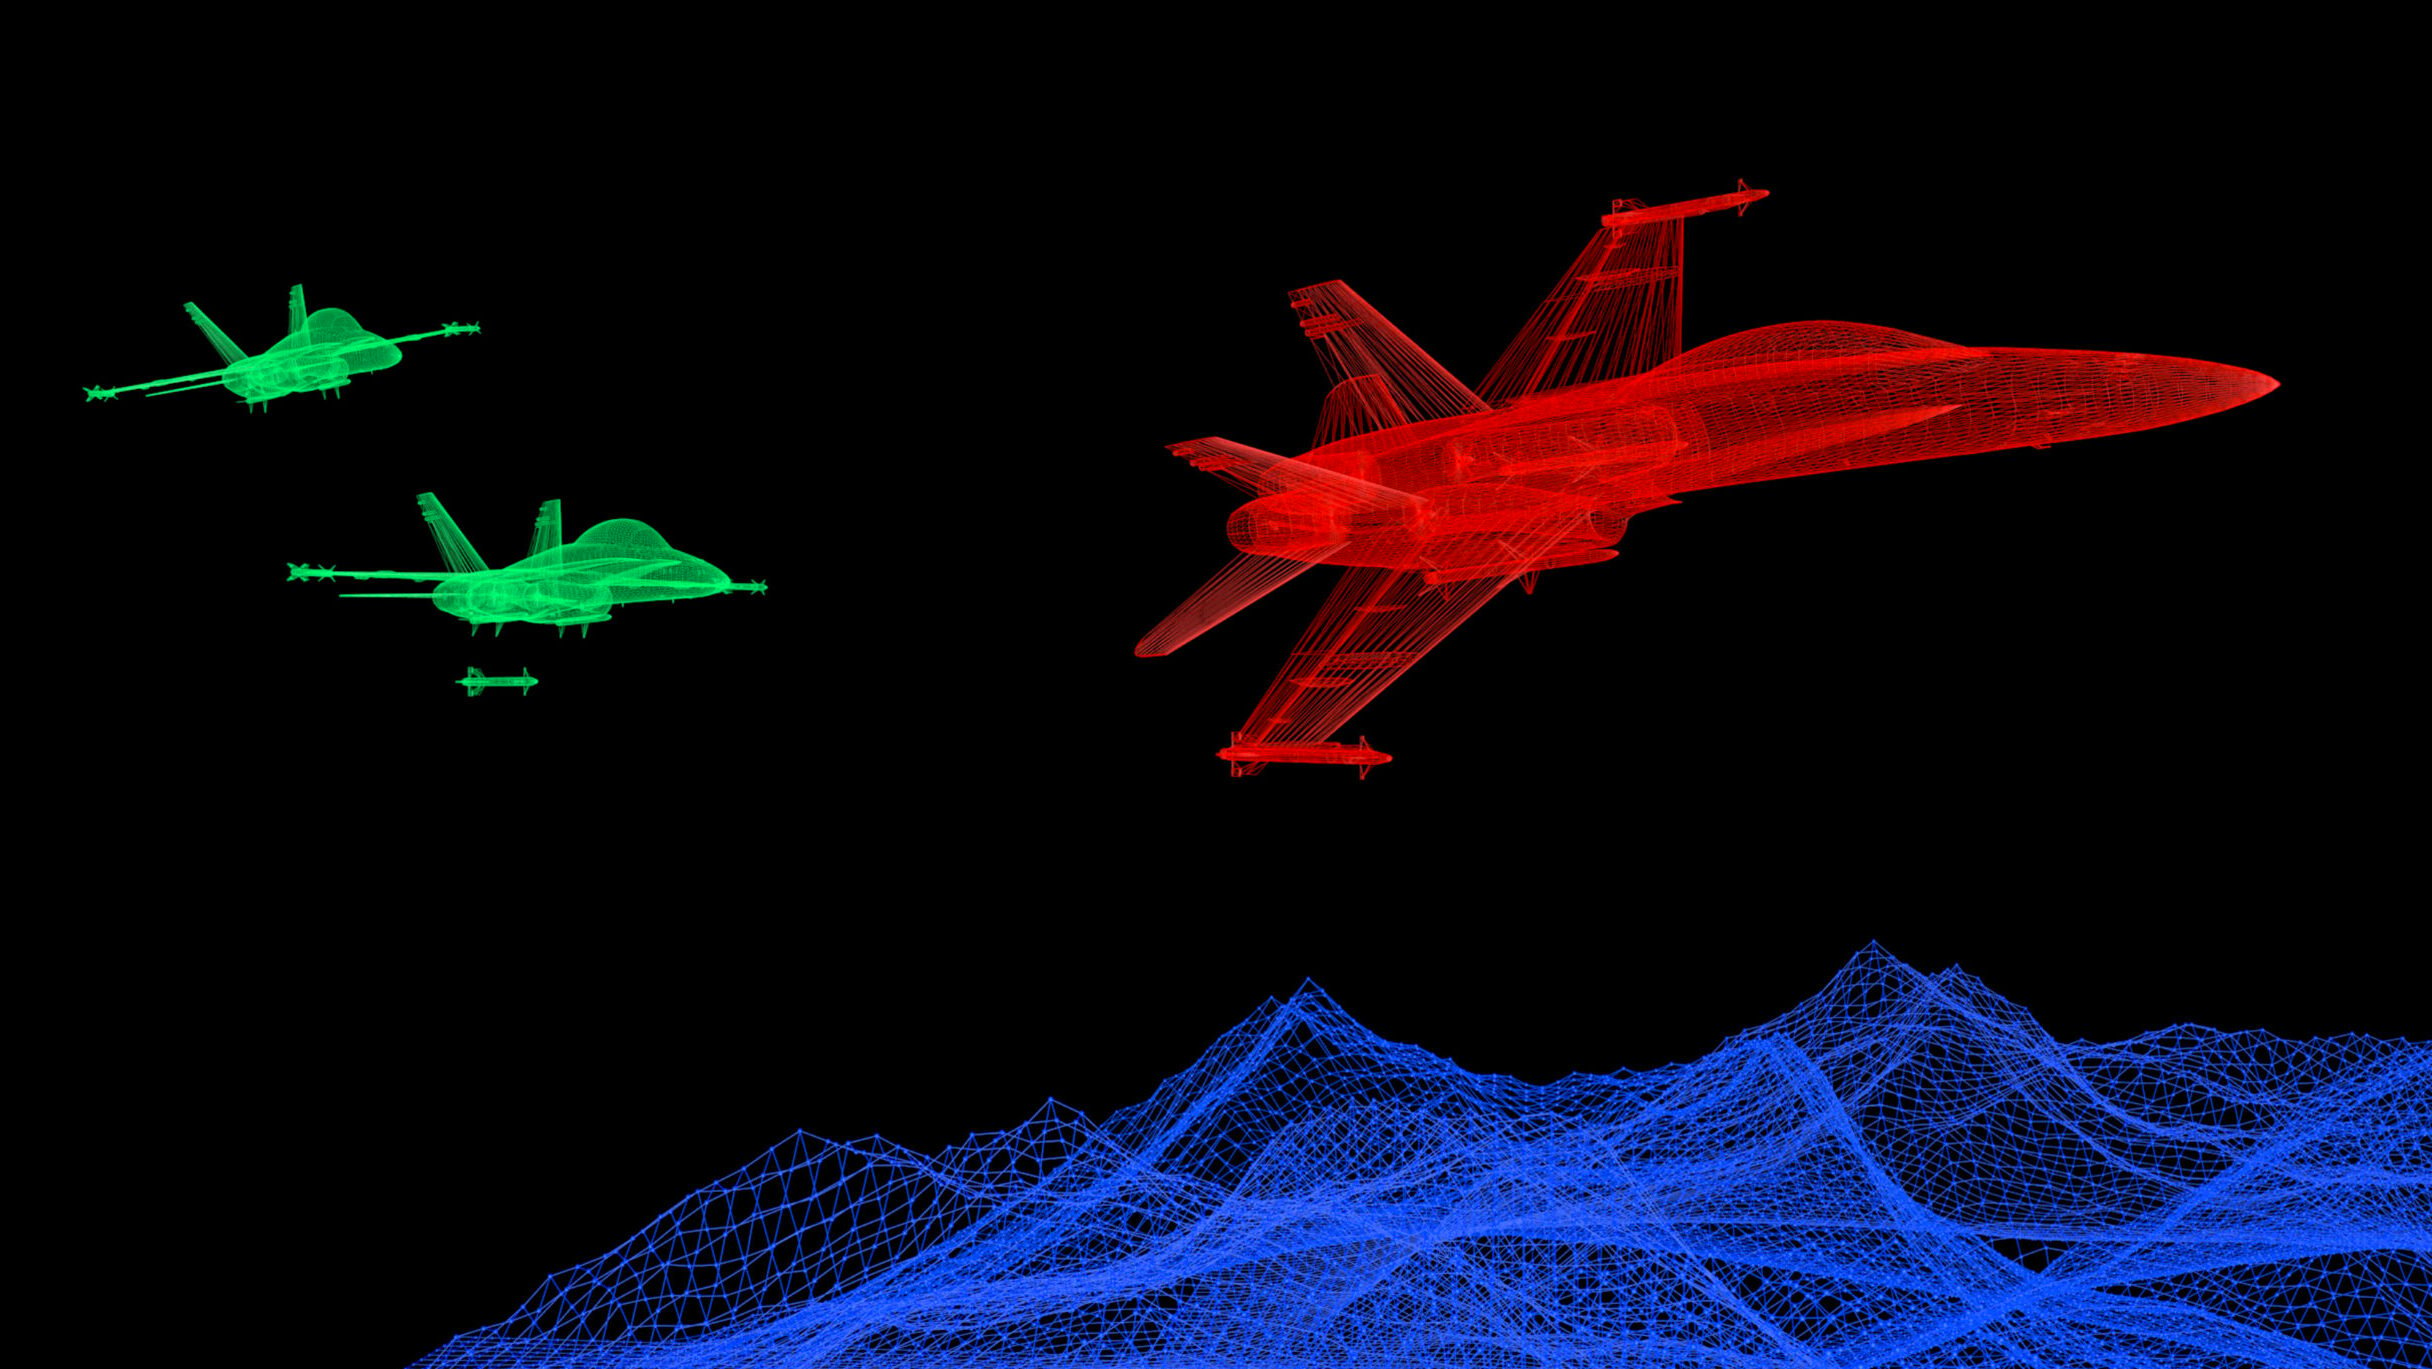 Digital fighter jets